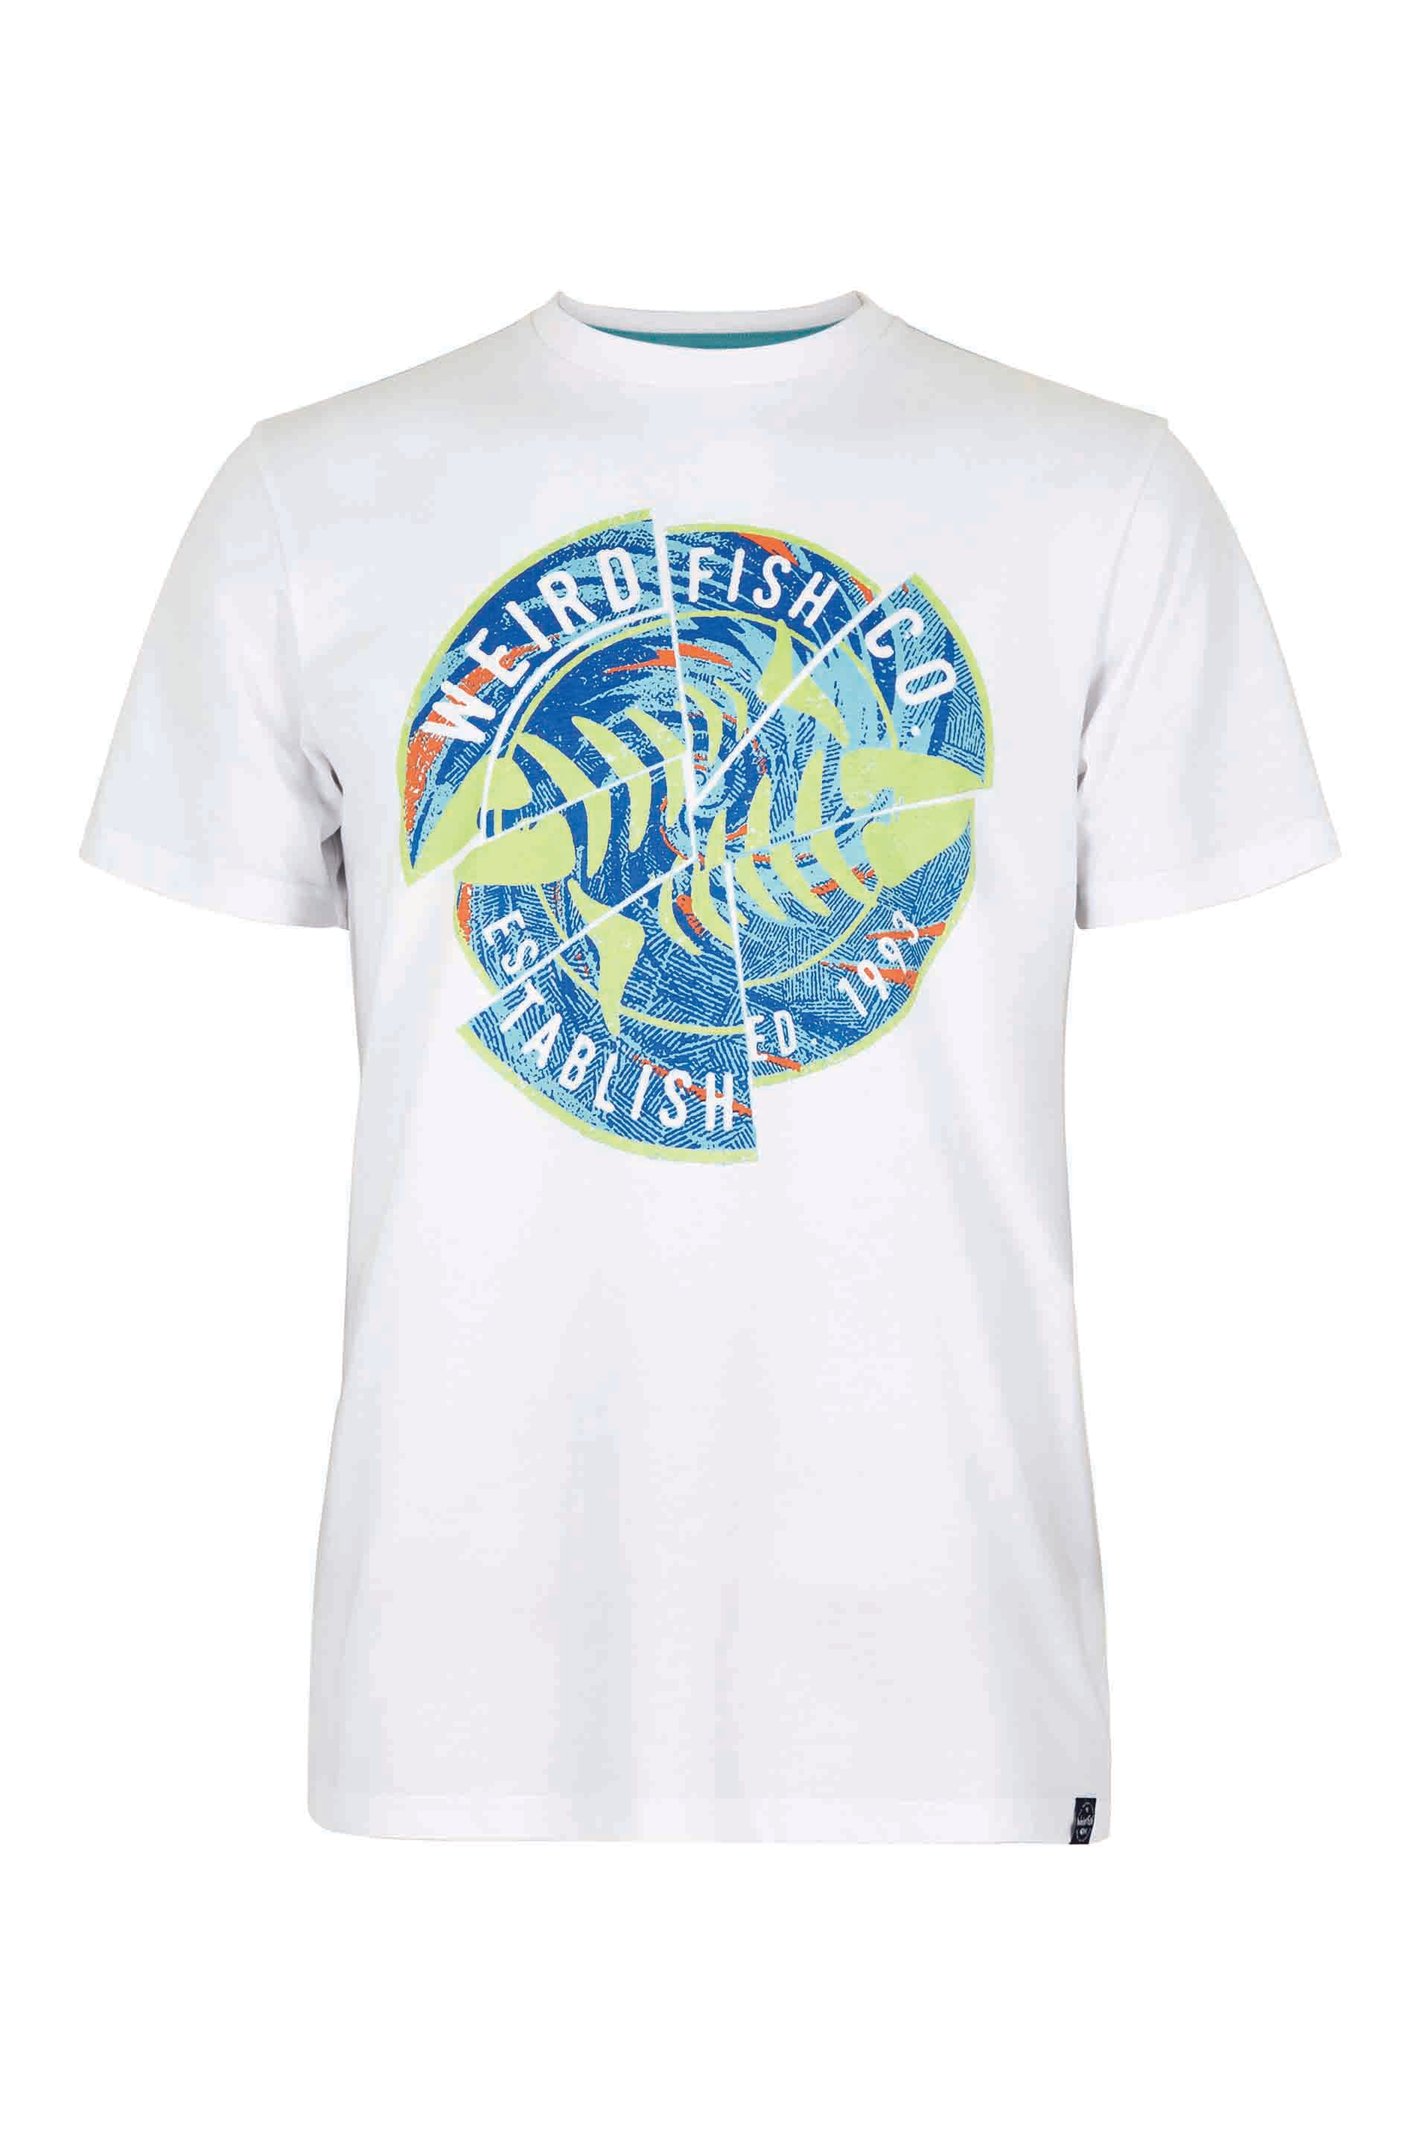 Weird Fish Vortex Eco Graphic T-Shirt White Size L